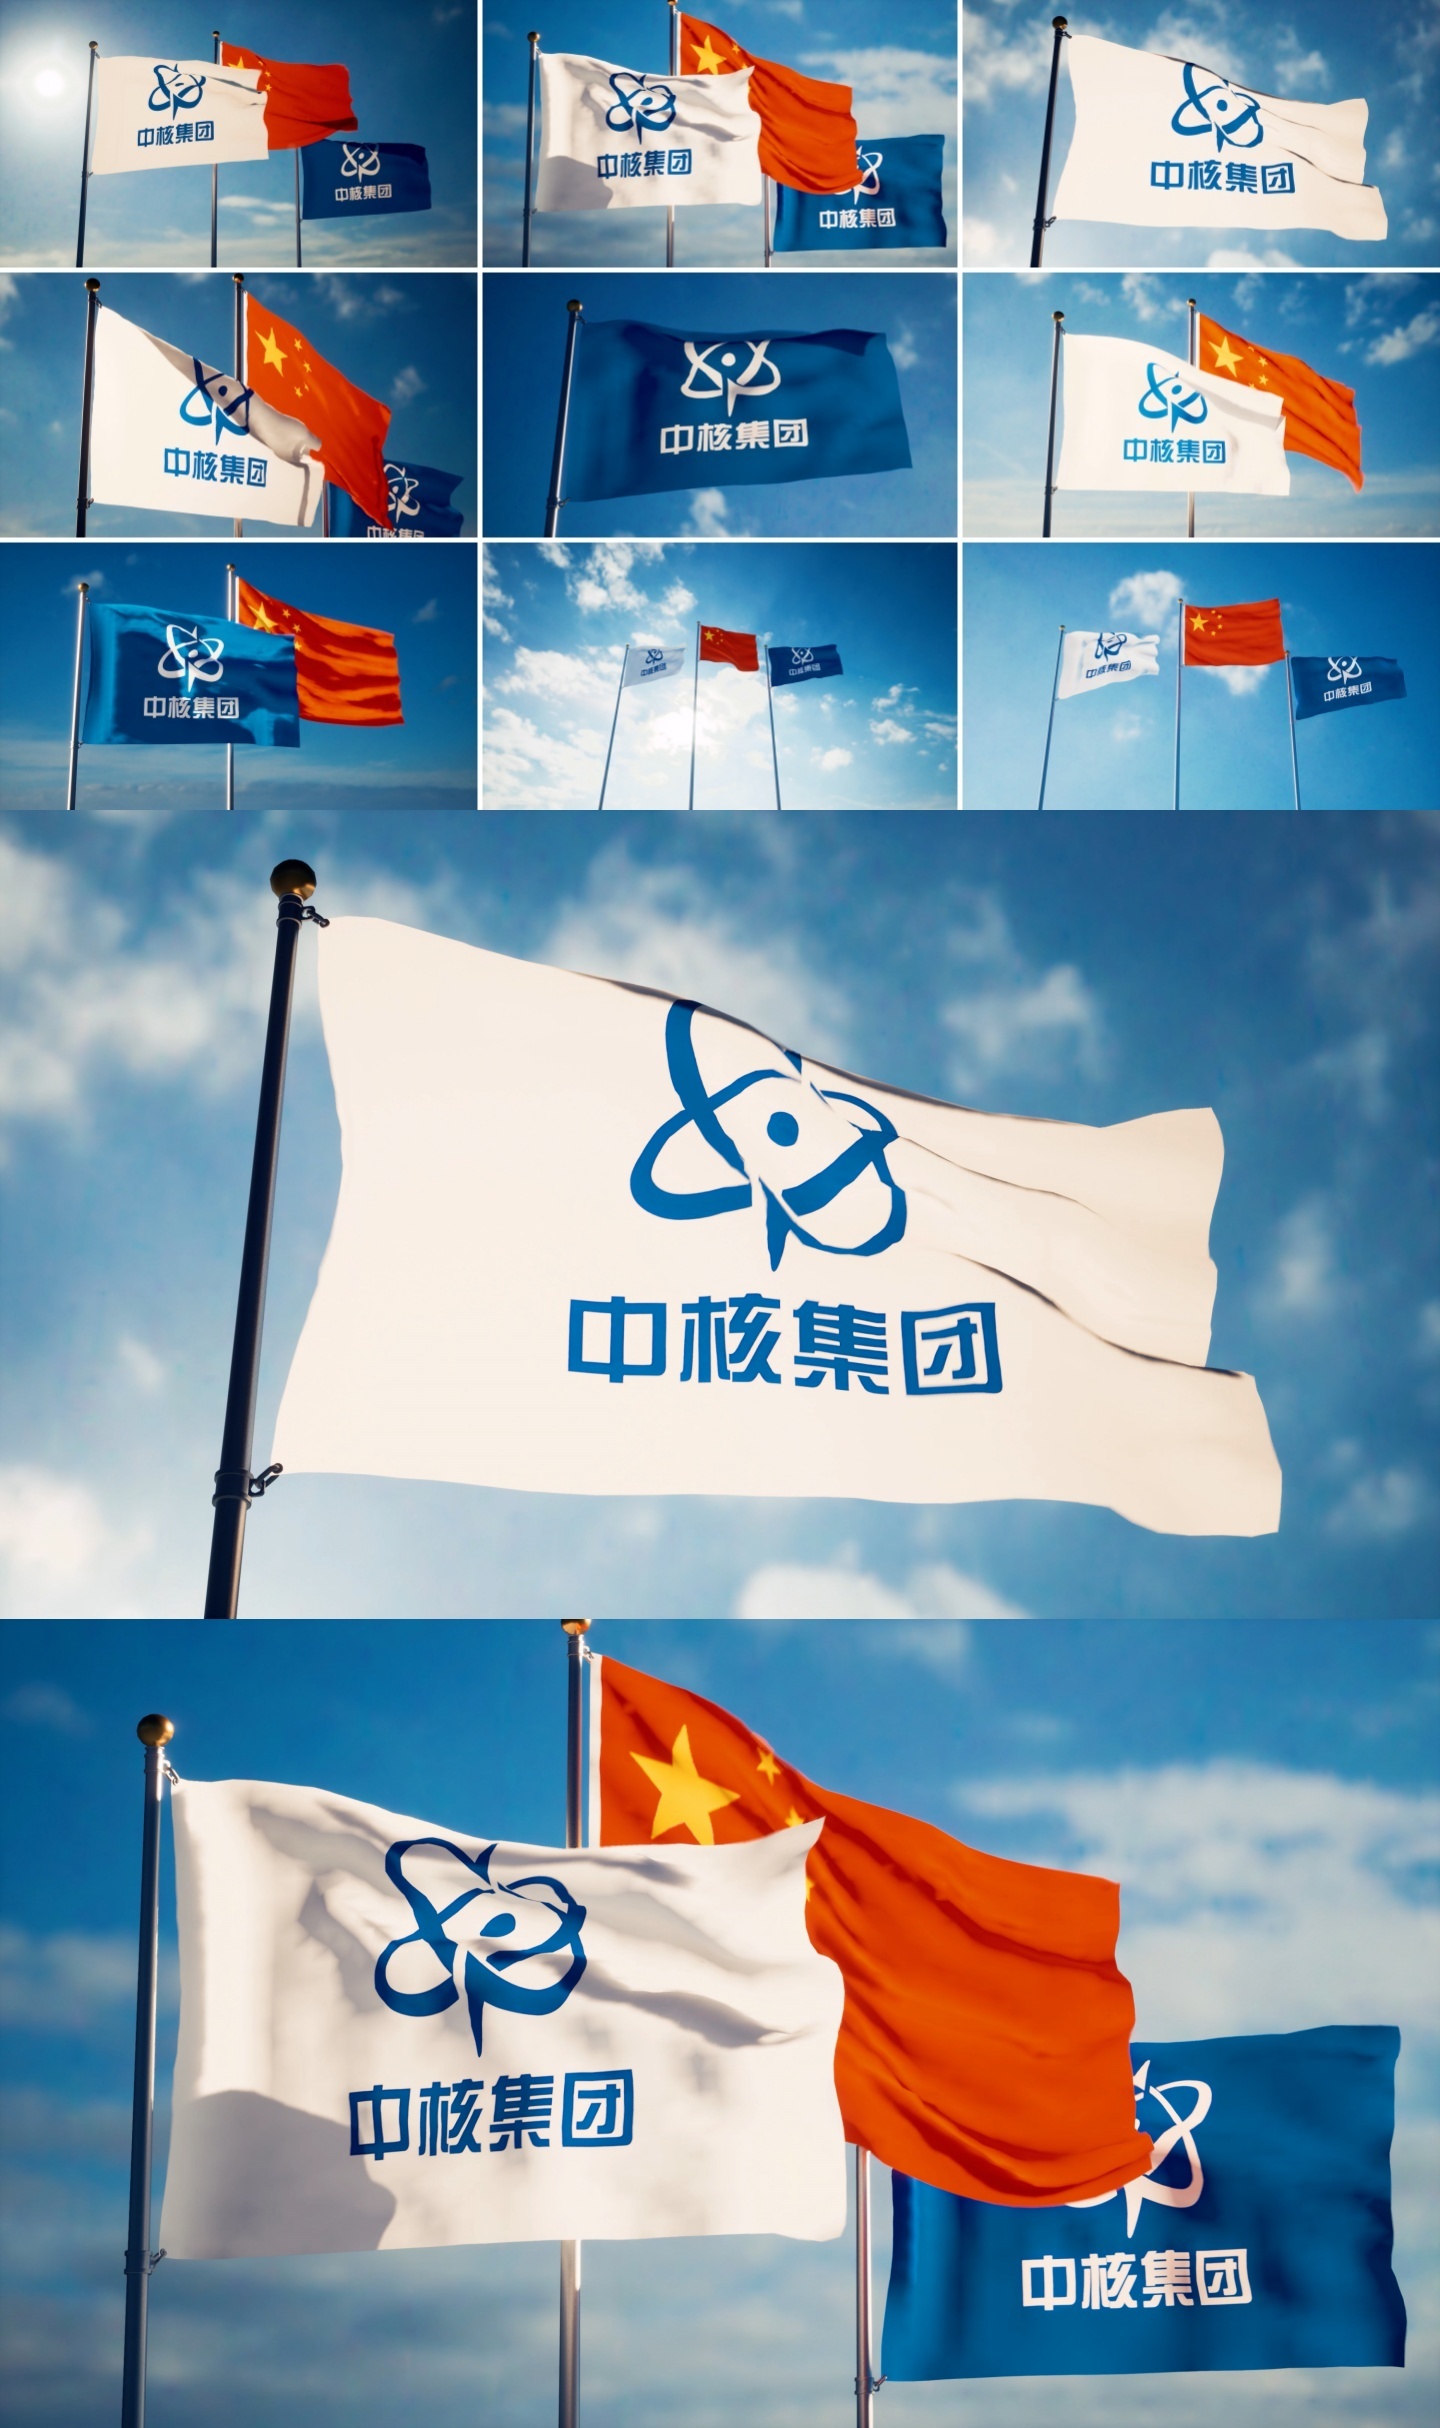 中核集团旗帜飘扬中核集团旗子